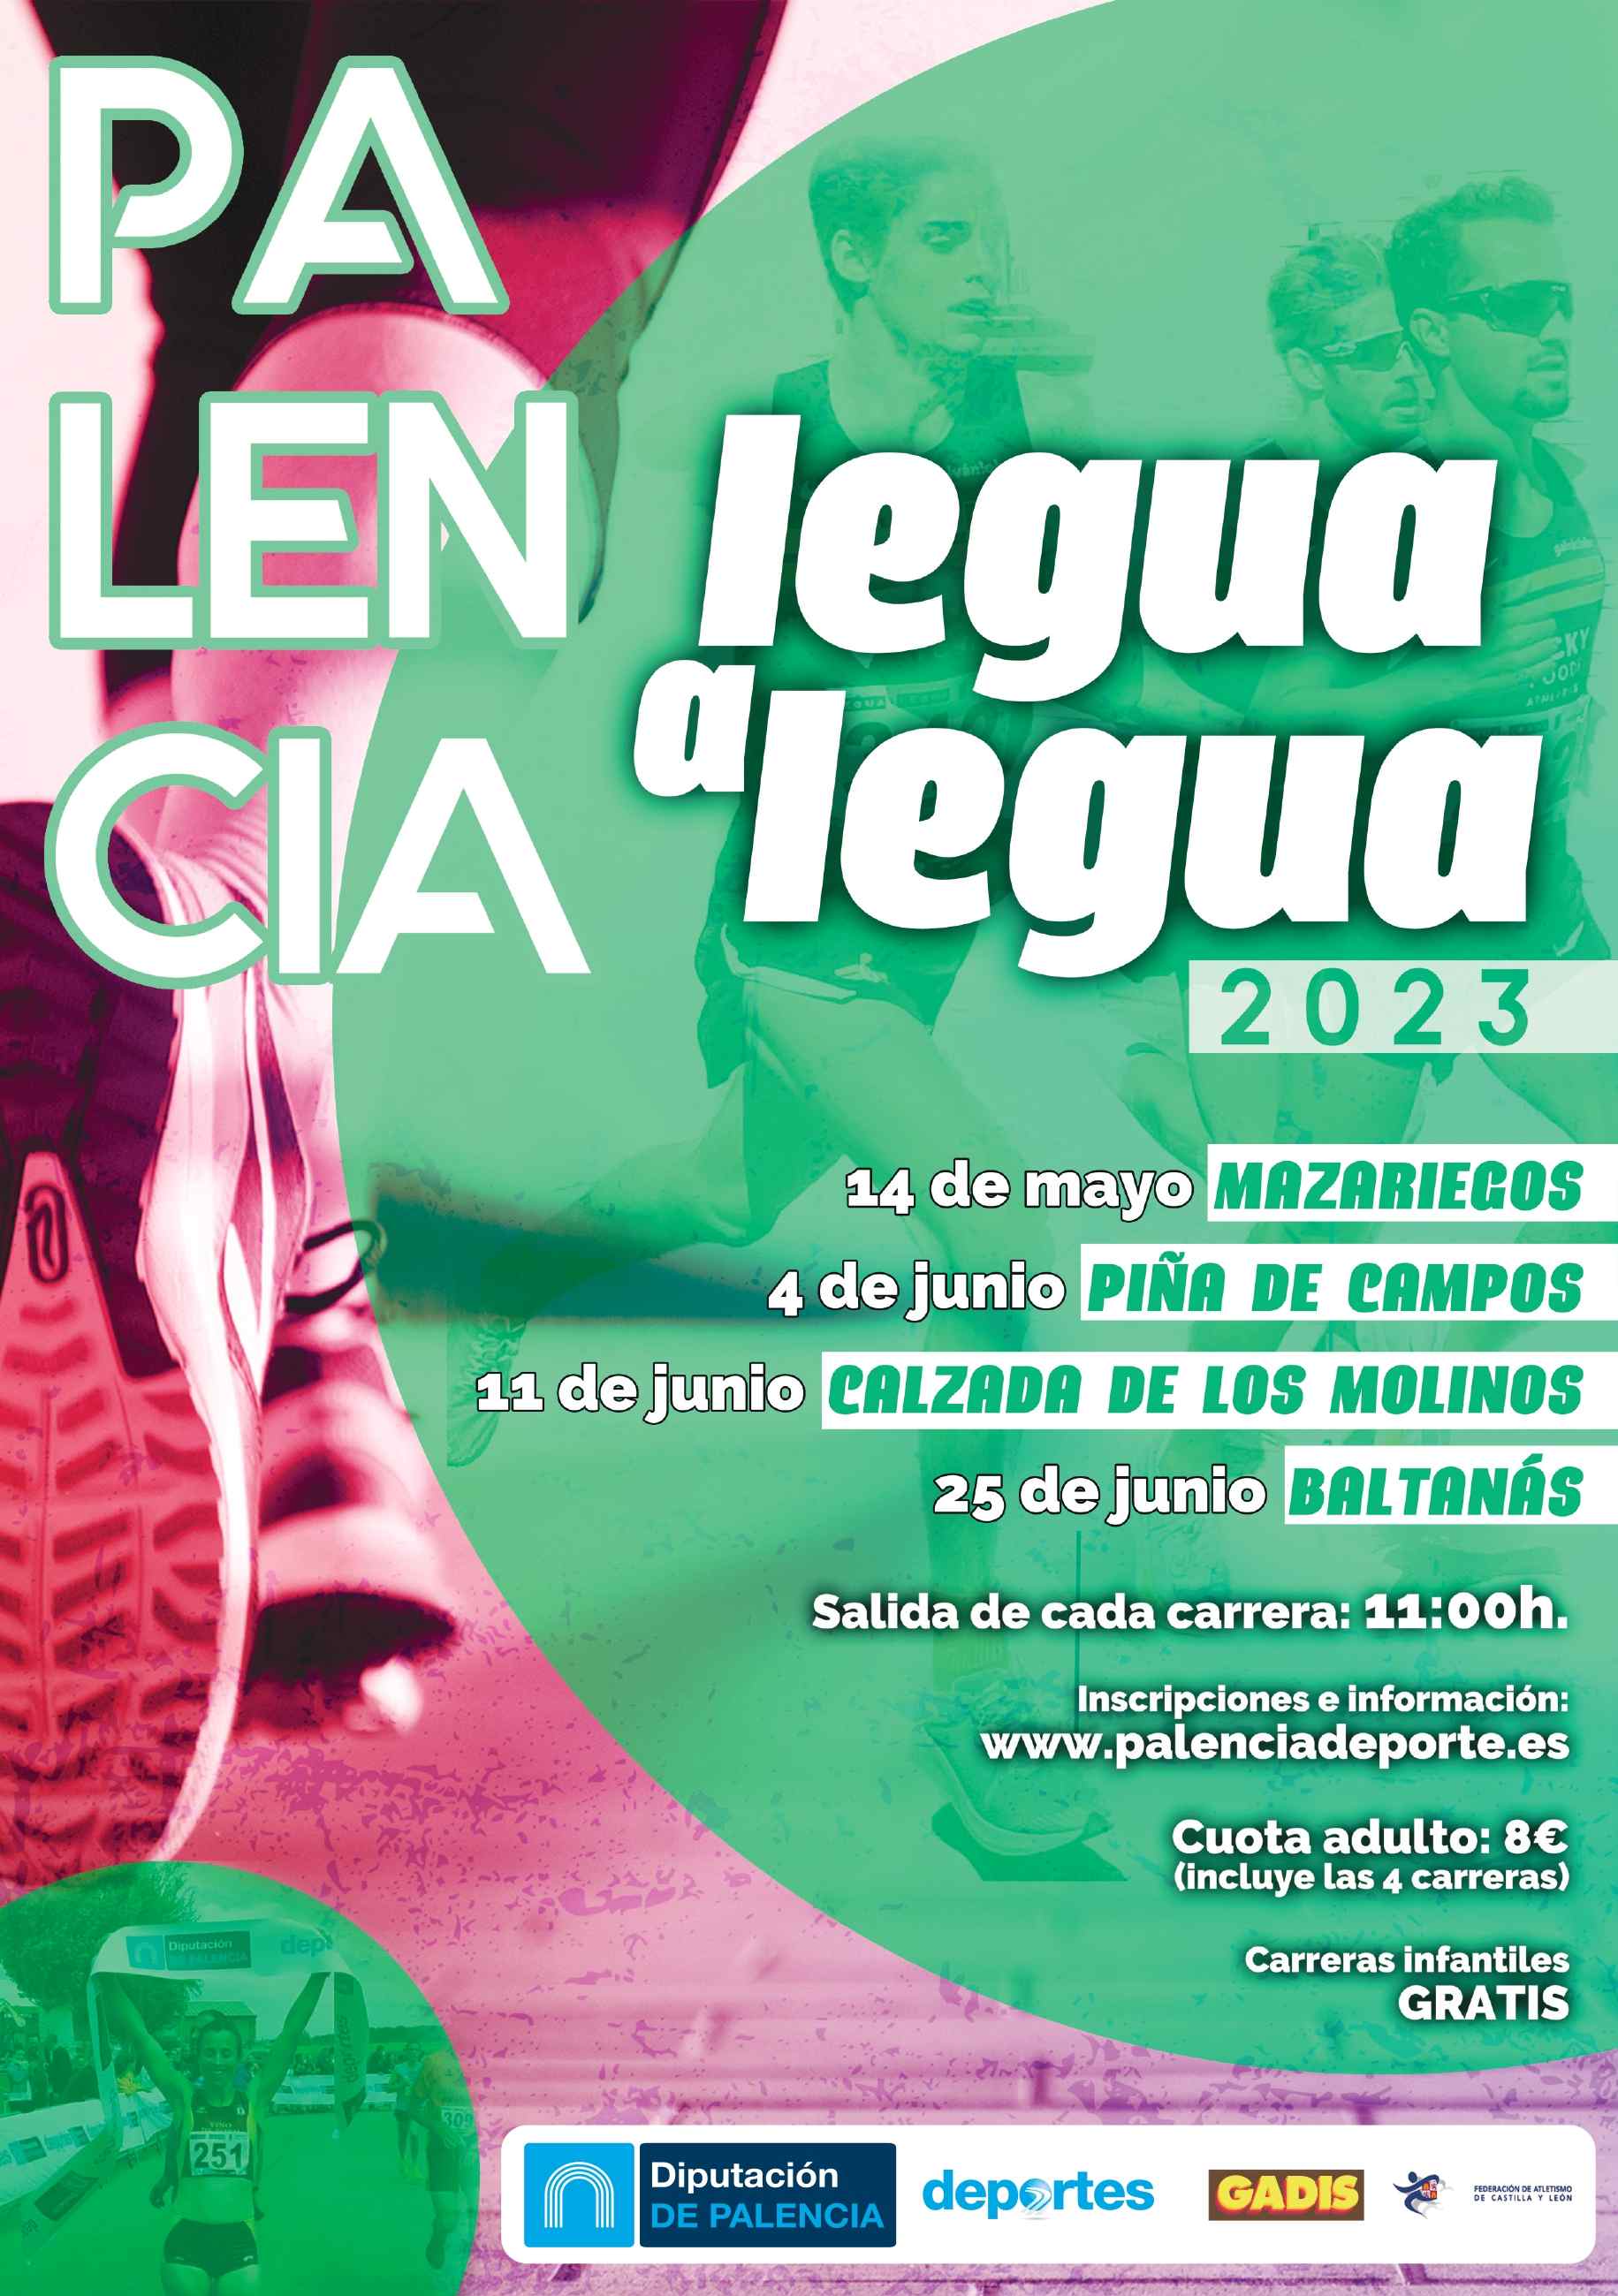 Event Poster CALZADA DE LOS MOLINOS PALENCIA LEGUA A LEGUA 2023